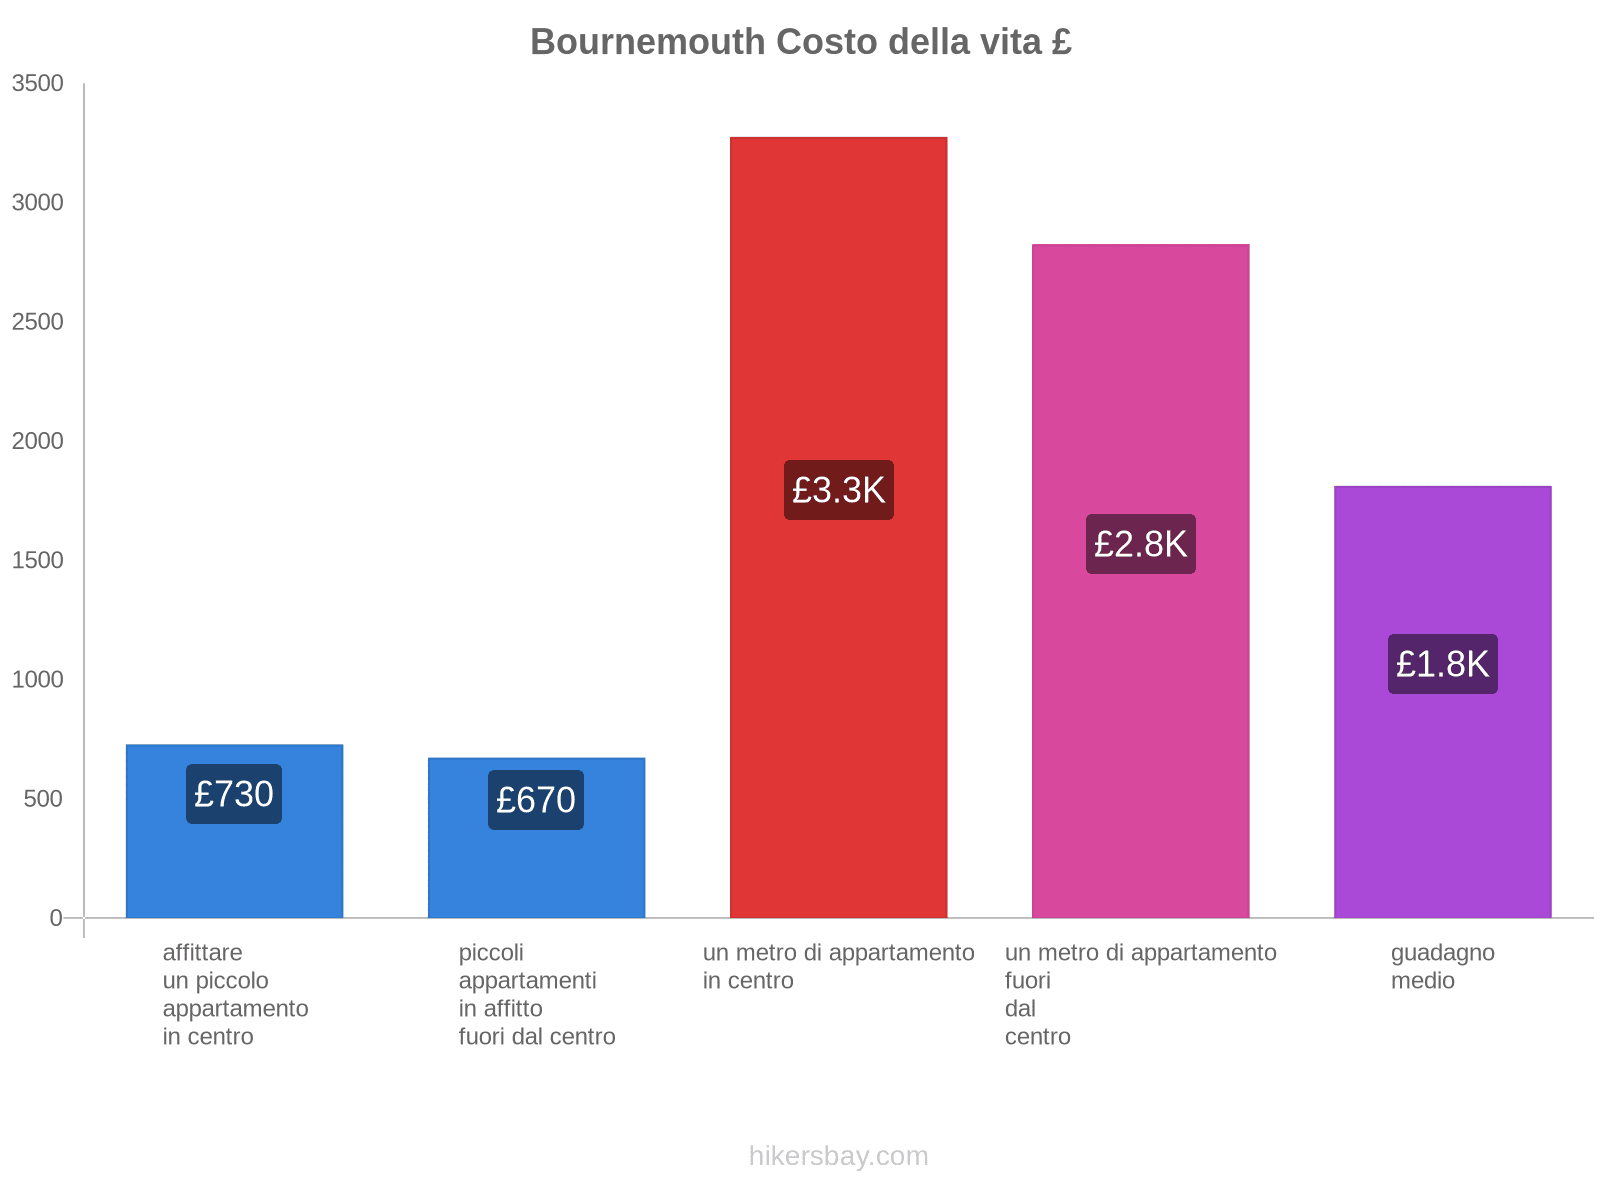 Bournemouth costo della vita hikersbay.com